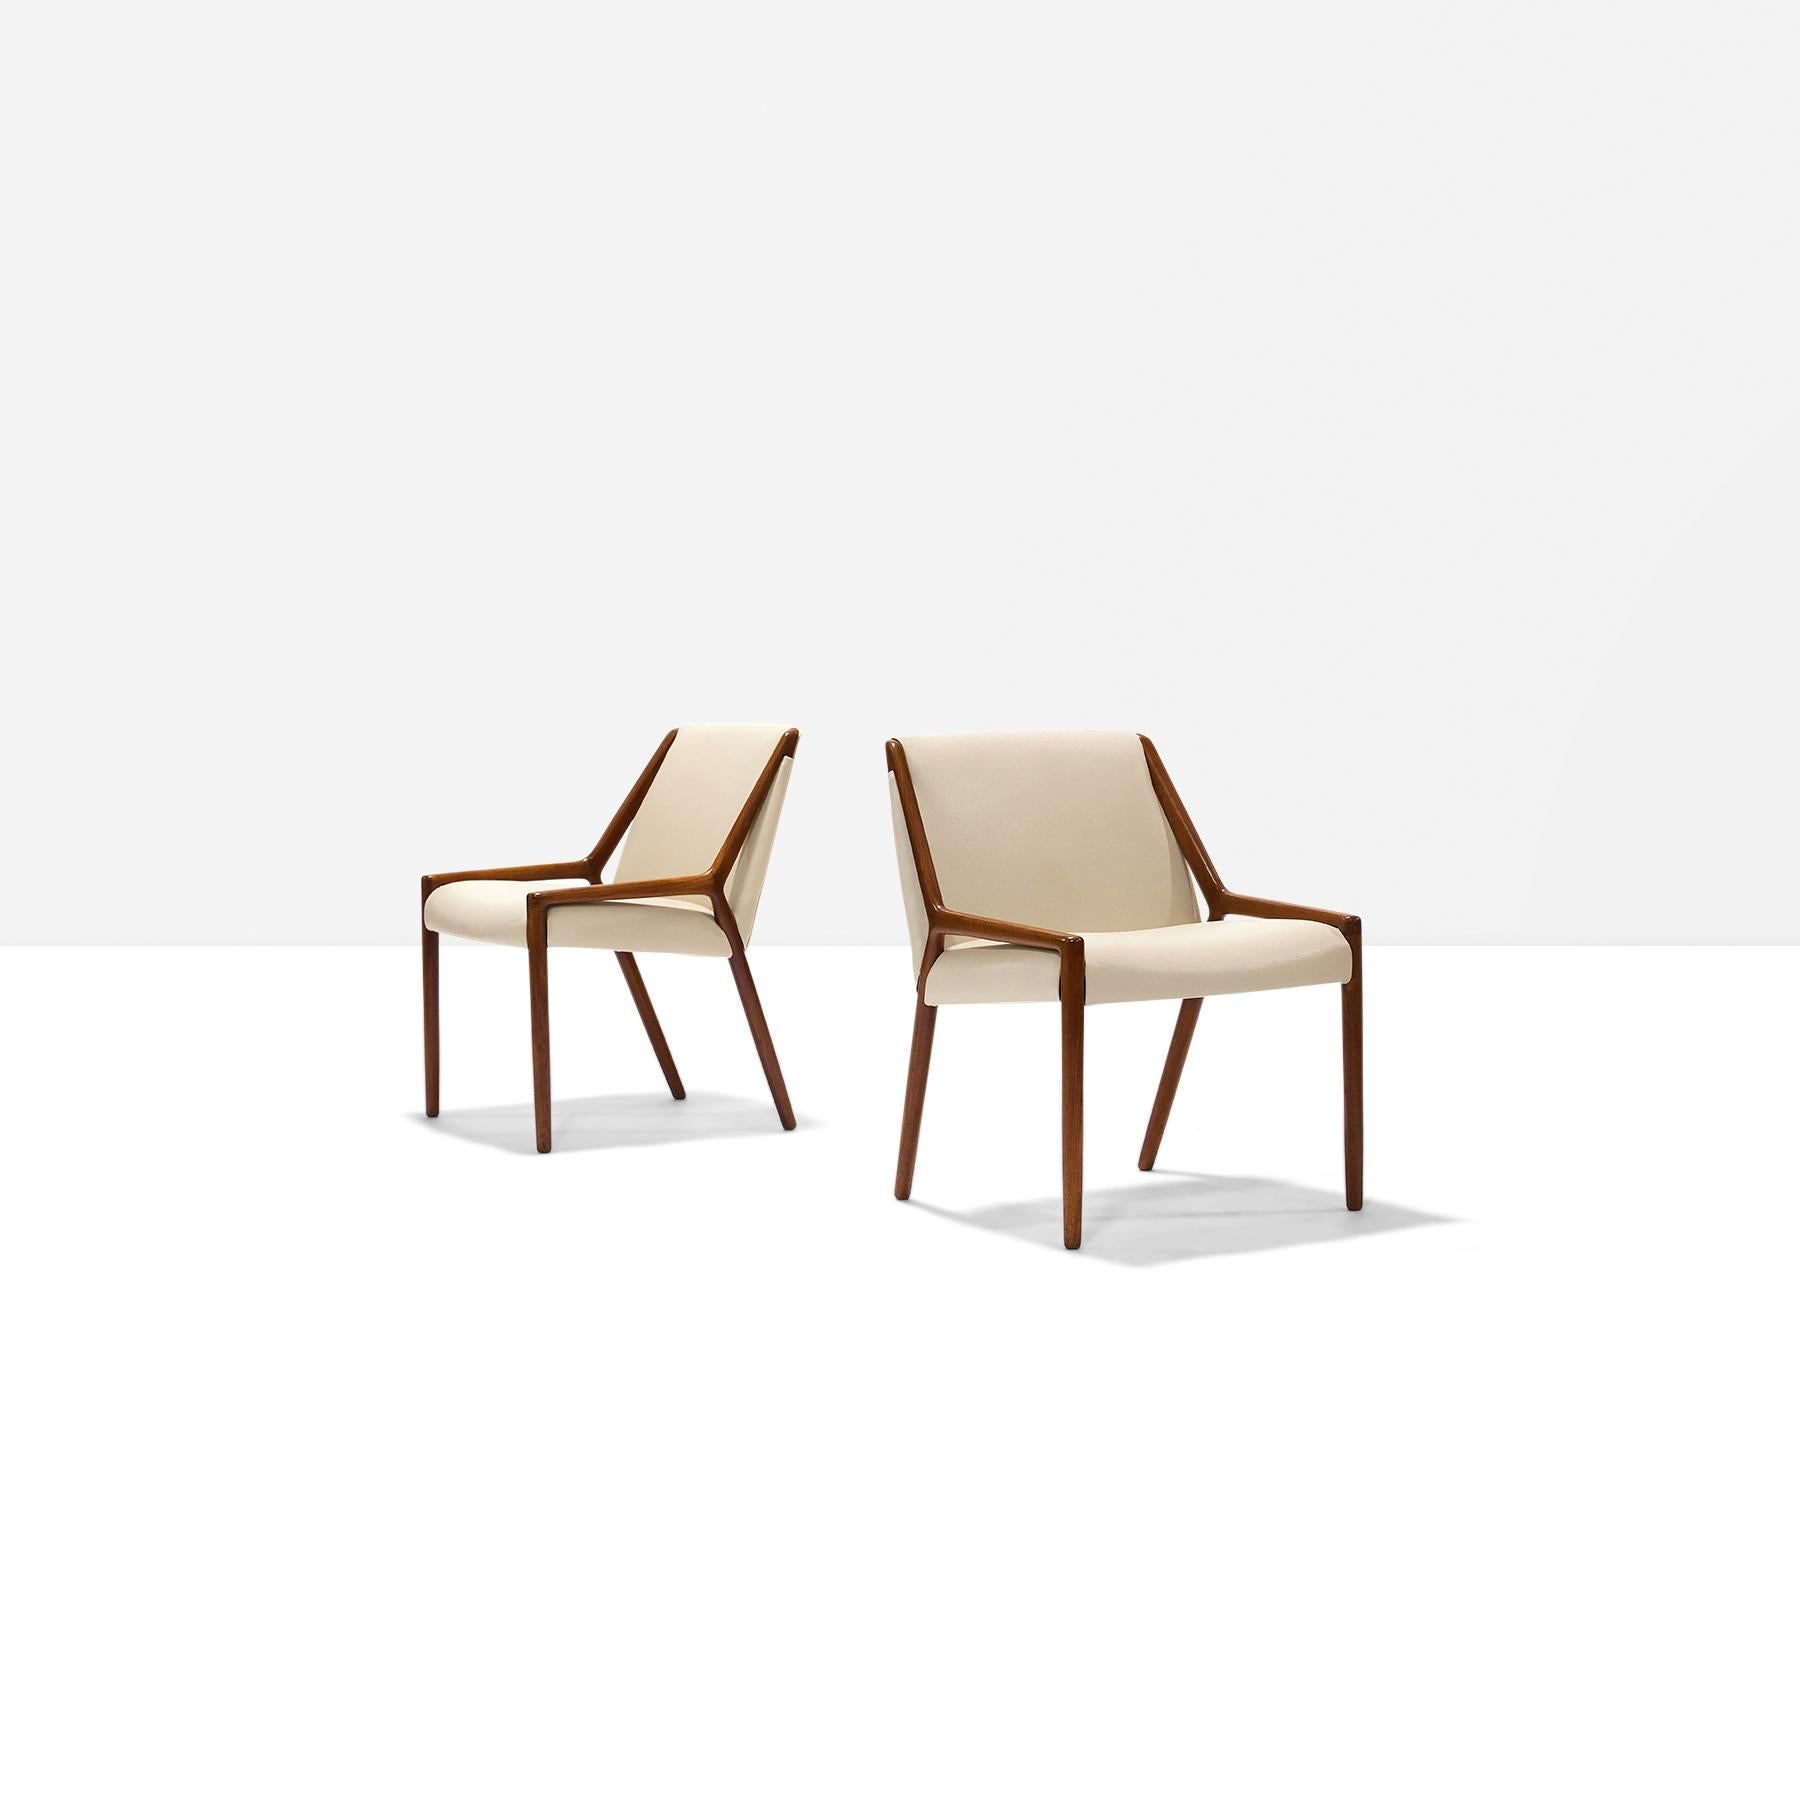 Paire de chaises d'appoint en teck et cuir par Ejner Larsen et Aksel Bender Madsen pour Willy Beck.
Remplacement du cuir de couleur crème. Les chaises sont vendues comme un ensemble ou séparément. En parfait état.